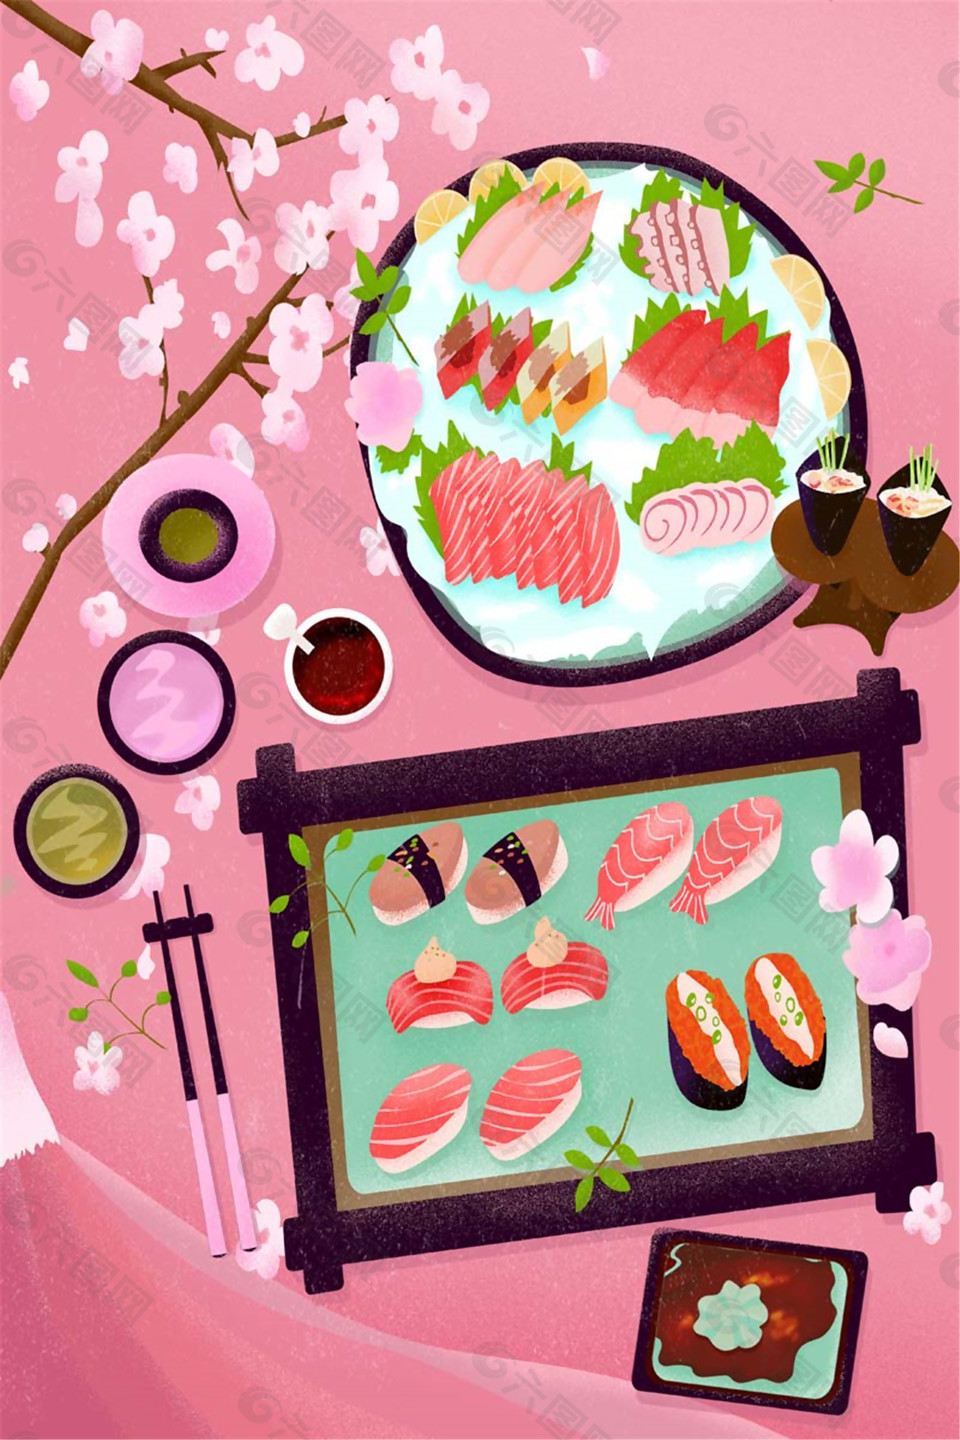 彩绘日系寿司美食广告背景素材